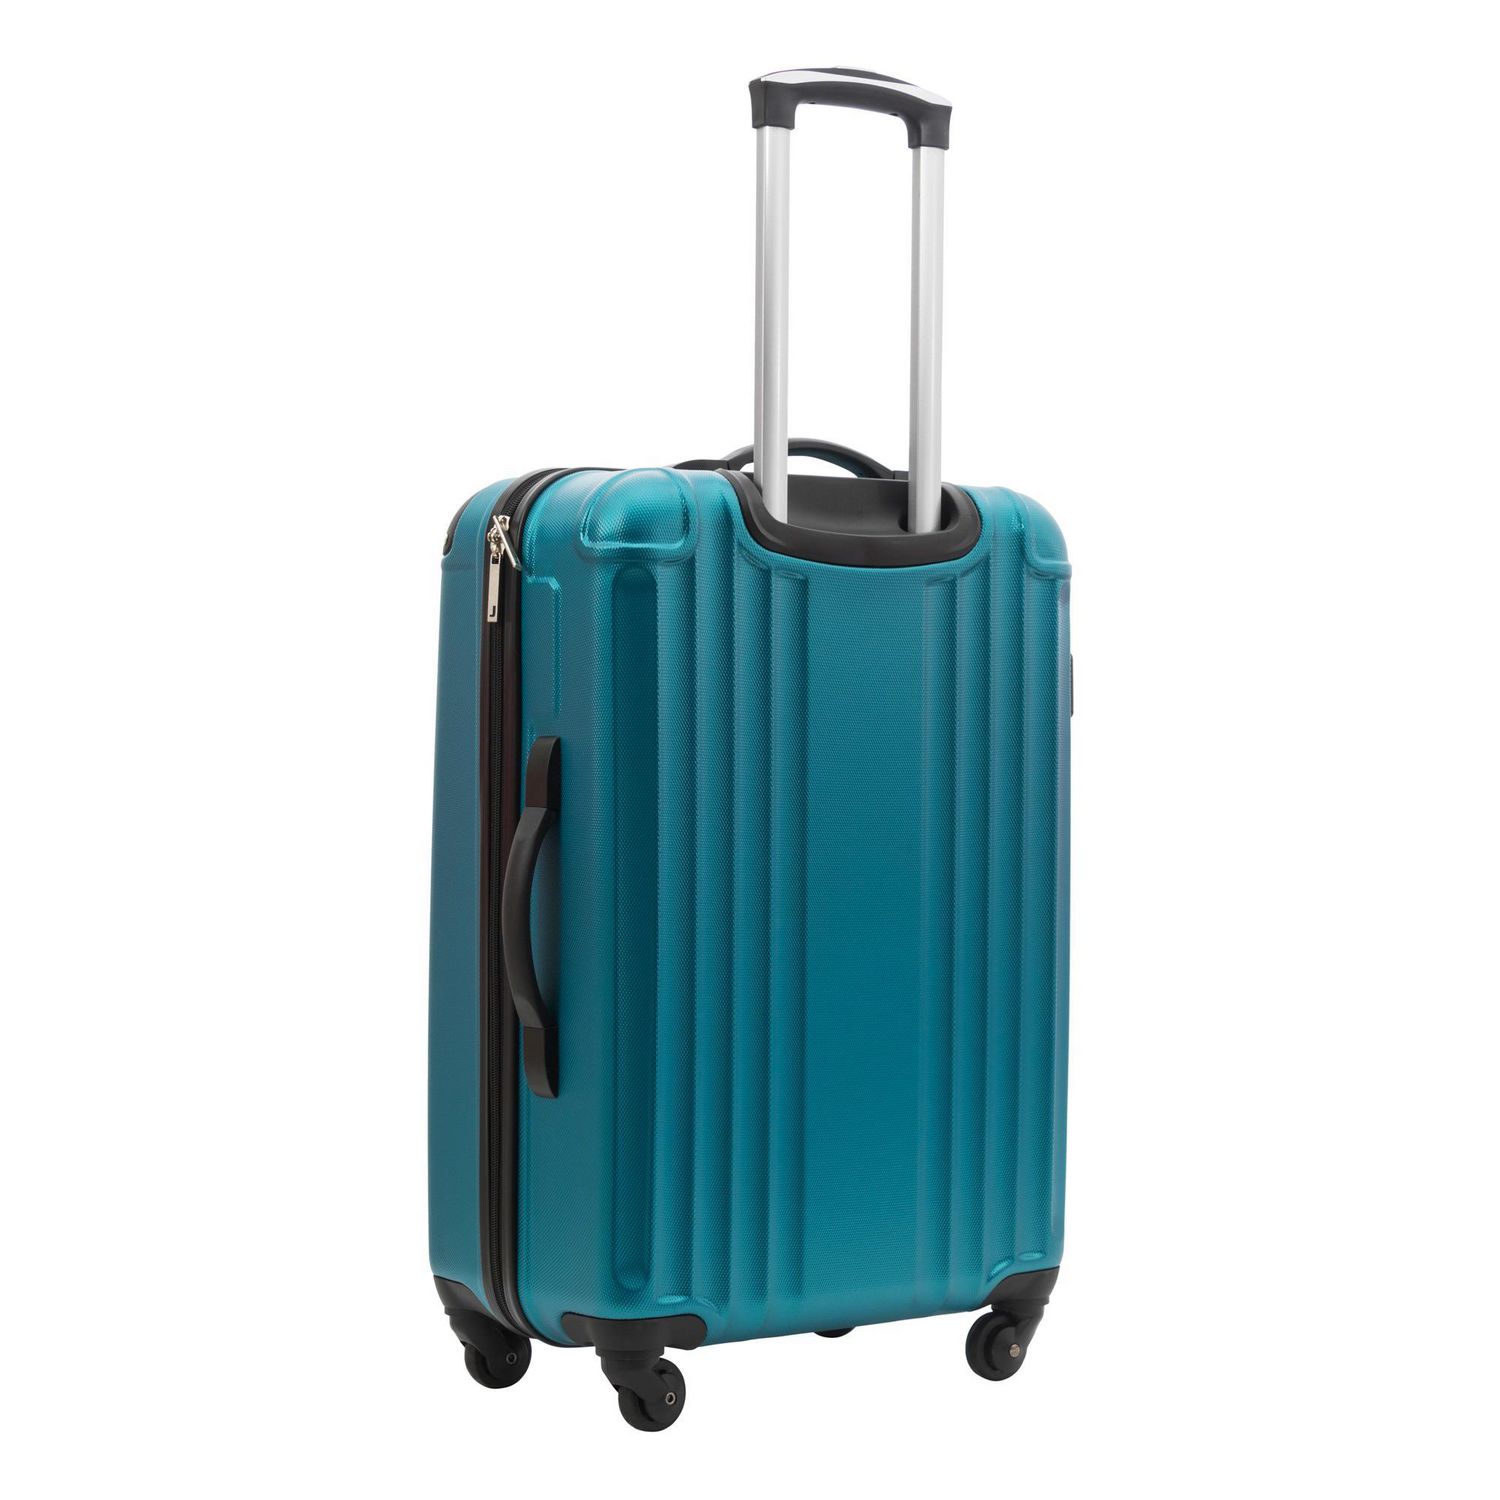 Atlantic Canadiana Medium Luggage Hardside Expandable Spinner Luggage 24-Inch Multicolored